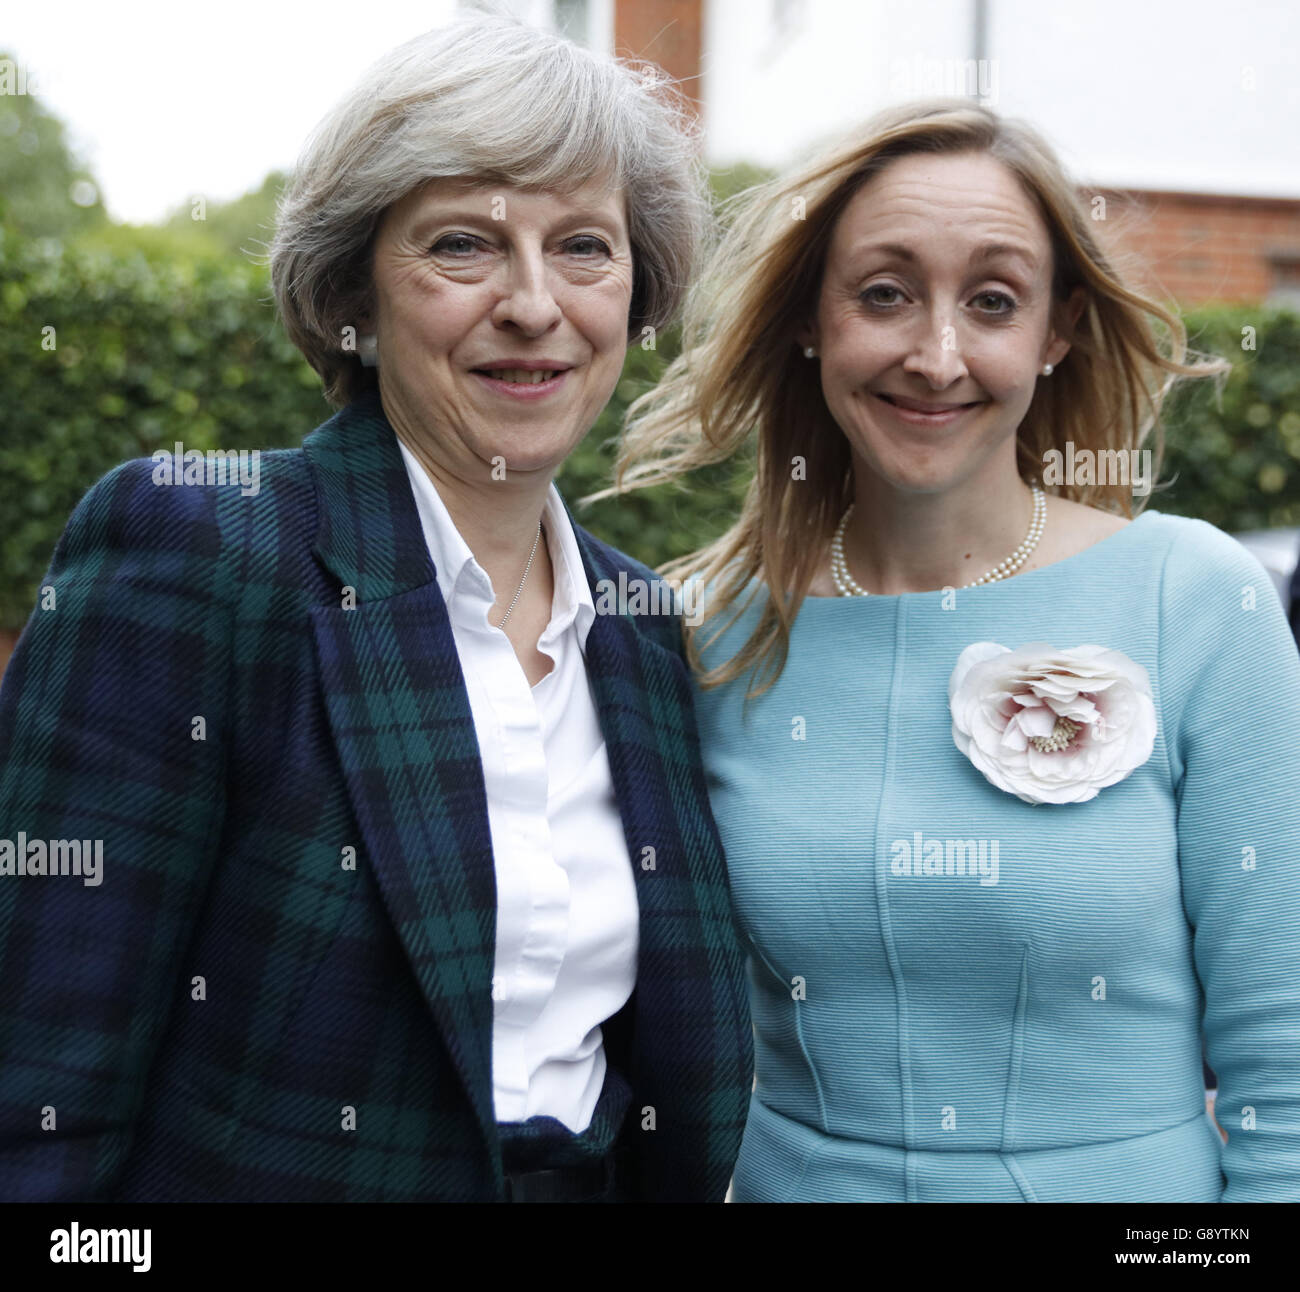 Londres, Reino Unido, 30 de junio de 2016. Teresa Mayo y crédito: Fantástico conejo/Alamy Live News Foto de stock